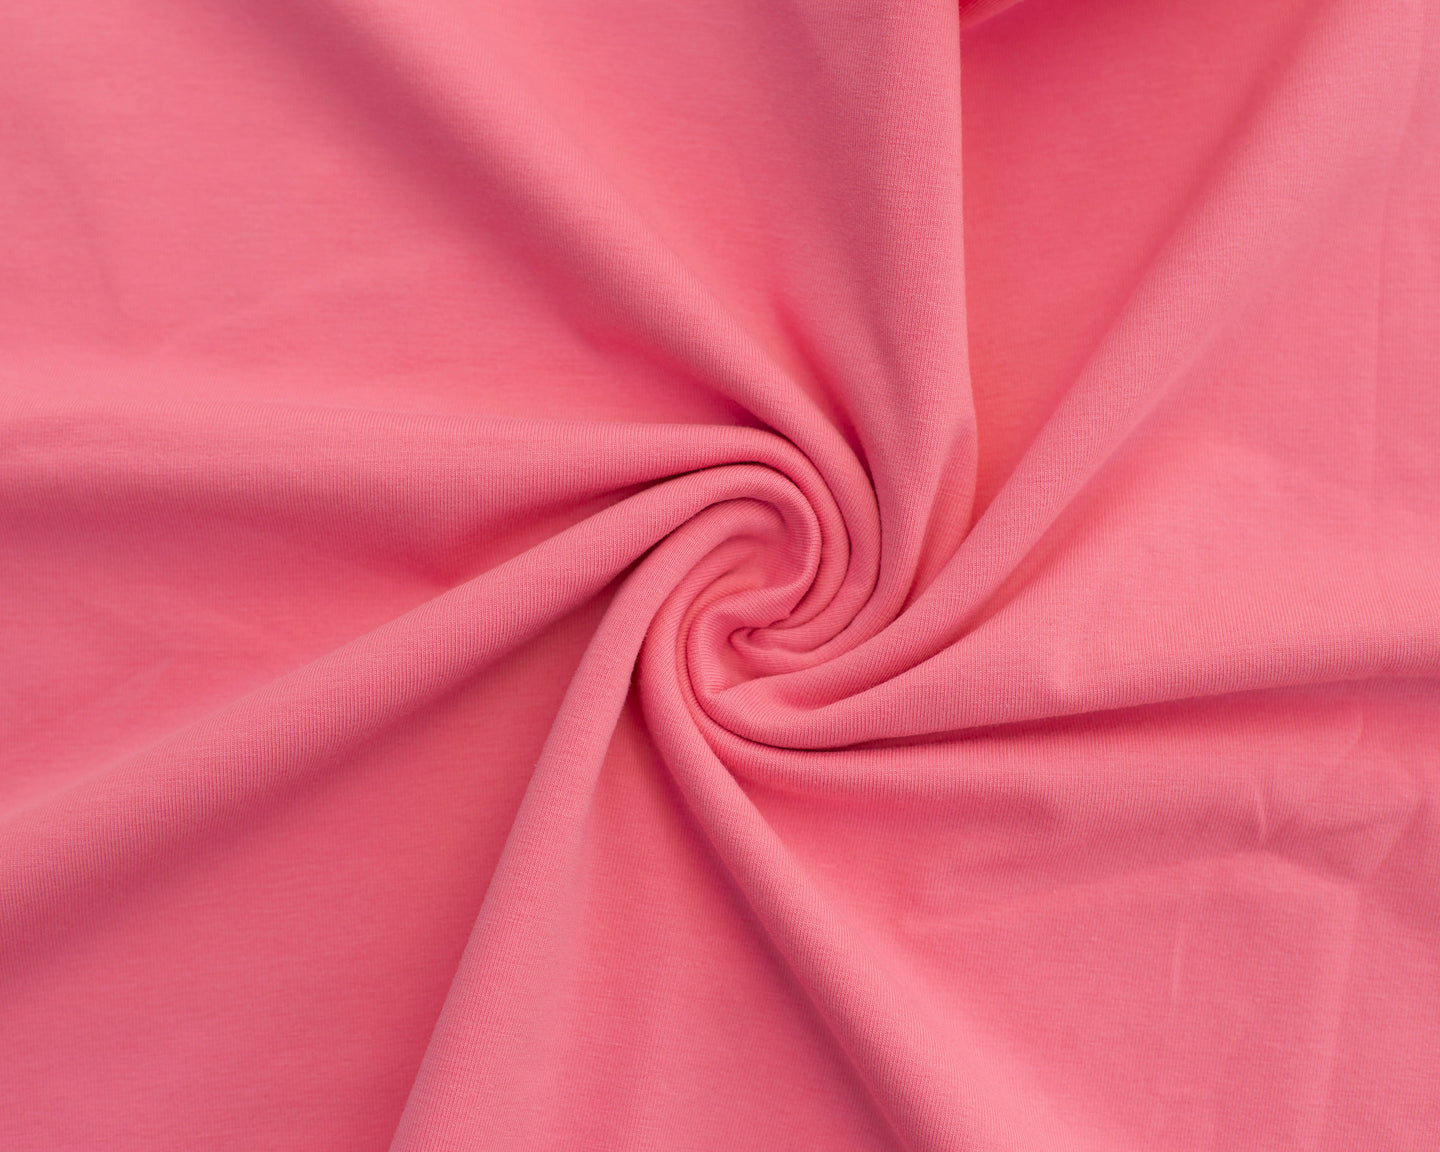 FS-97 Medium Pink Solid - Premium Cotton Spandex